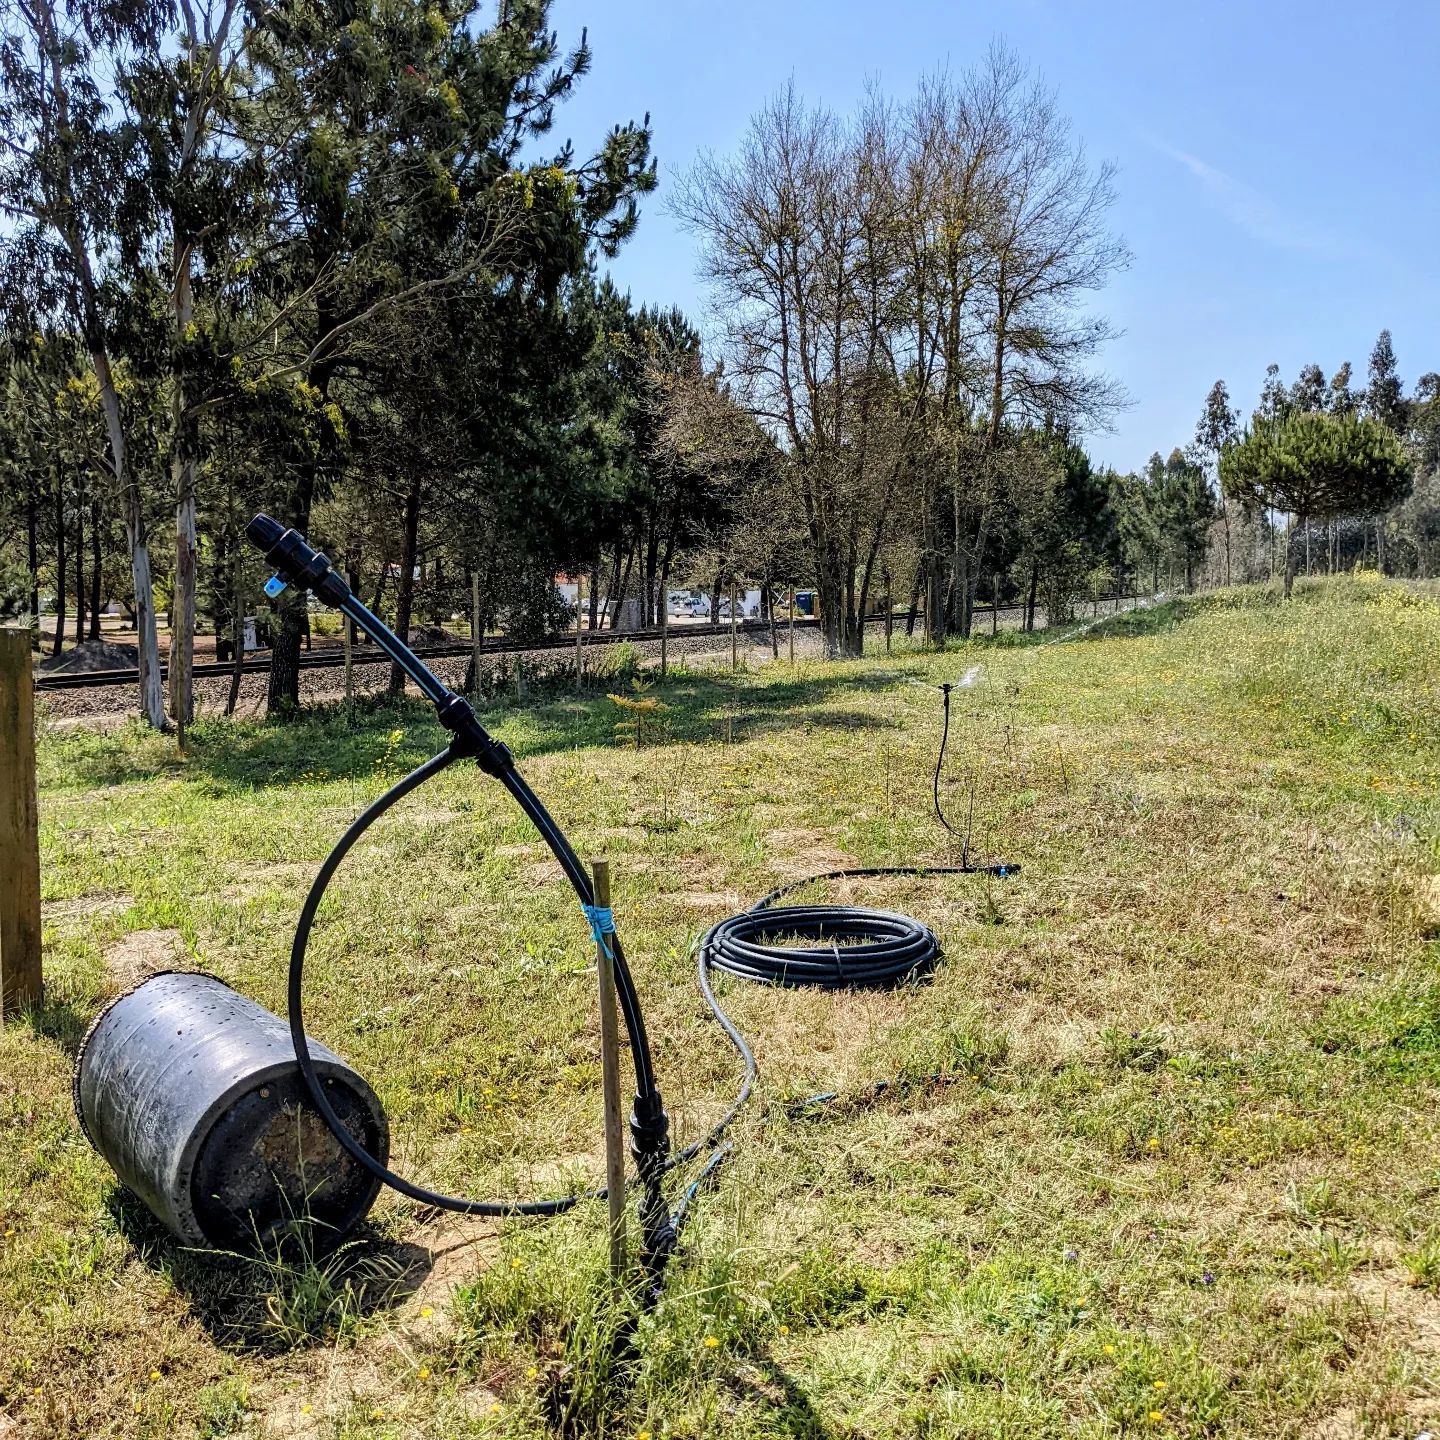 Hacked together setup to test one sprinkler